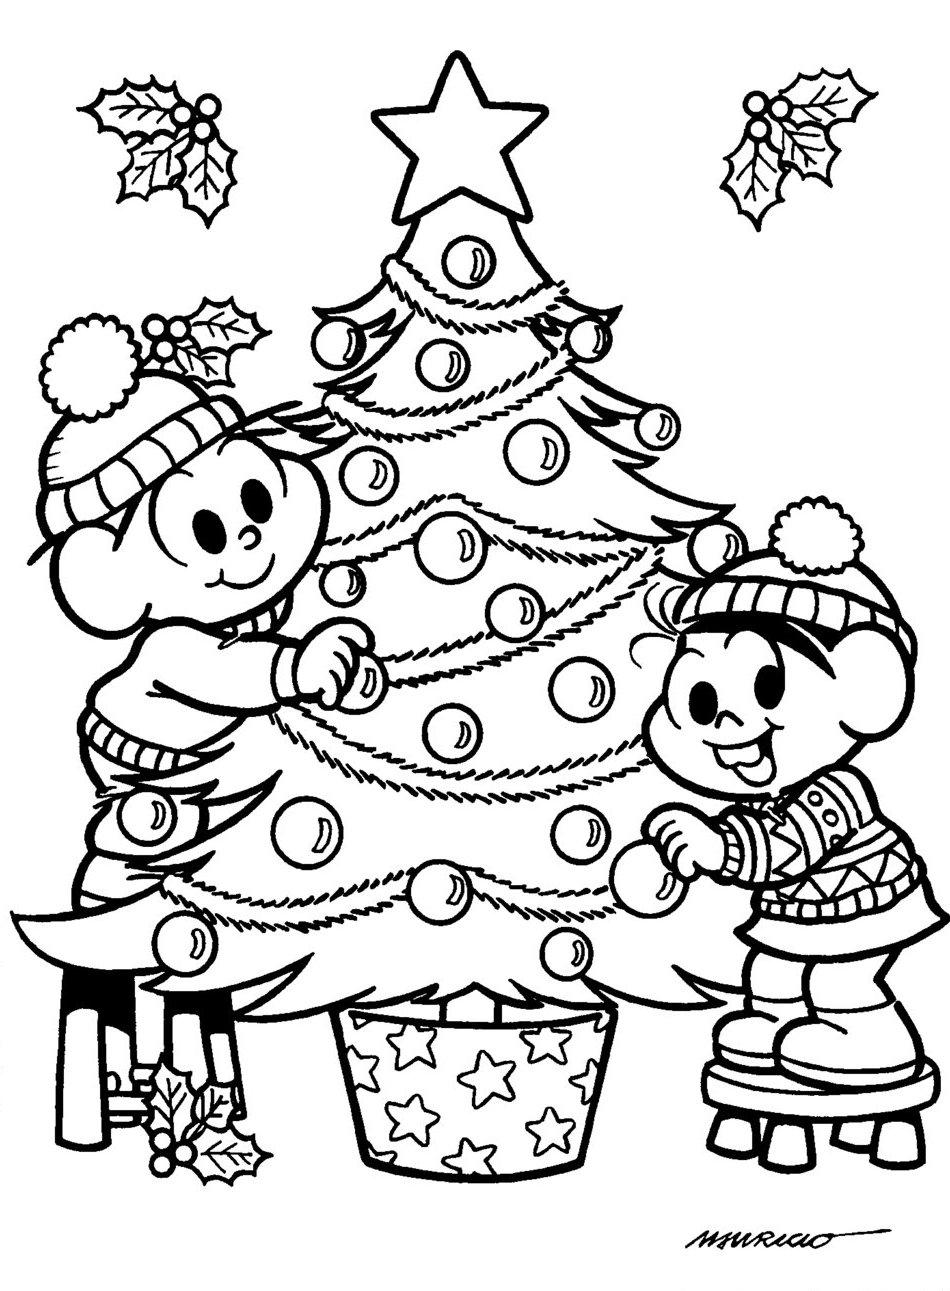 O Natal Da Turma Da Monica Desenhos Preto E Branco Para Colorir